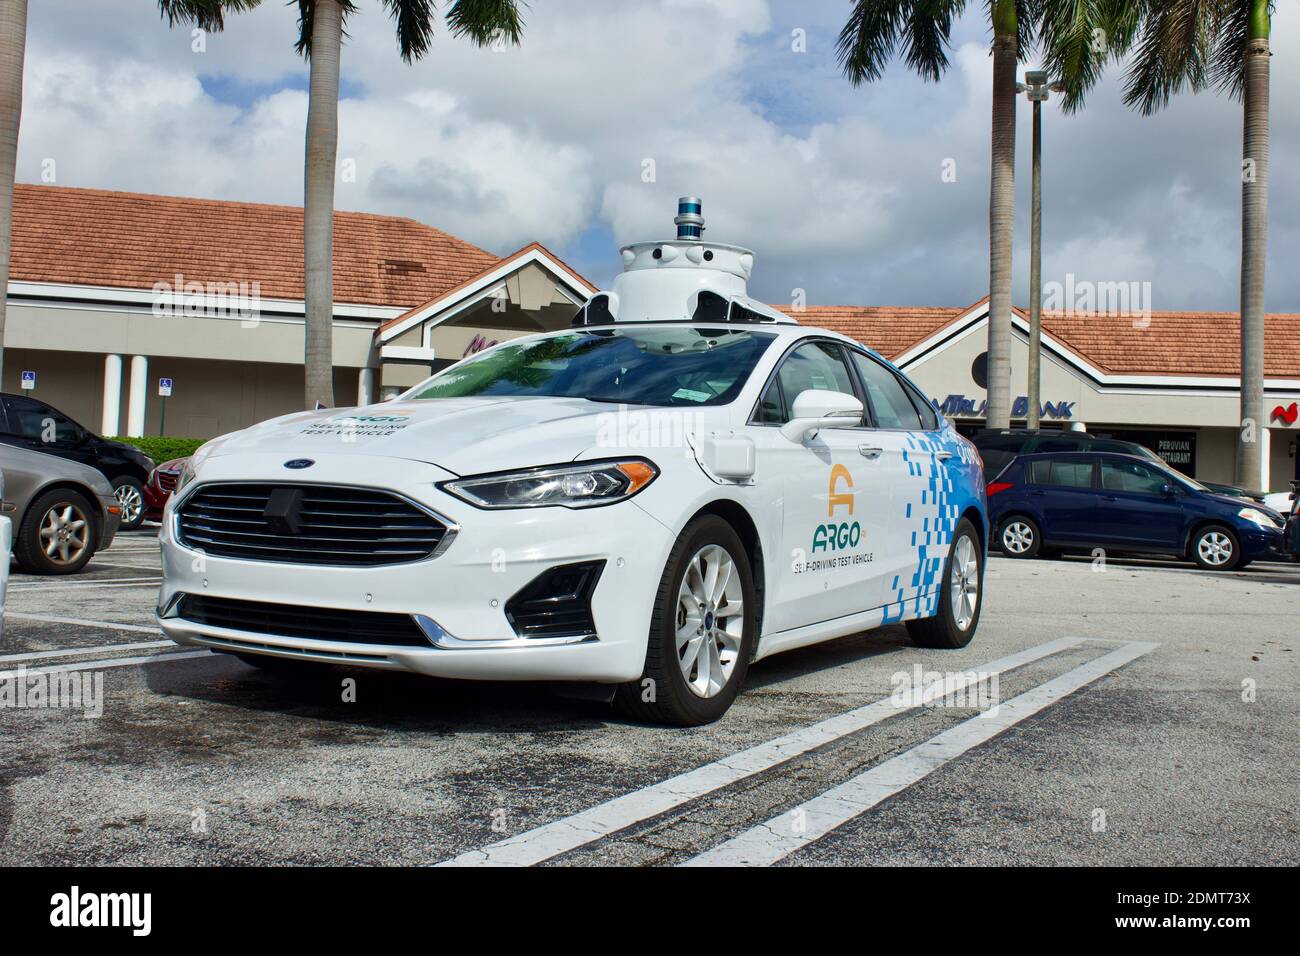 Doral FL 11/10/2020 ARGO.AI selbstfahrendes Testfahrzeug auf öffentlichen Straßen Kartierung Fahrspuren und 3d-Foto-Imaging-Bereich für zukünftige Anwendungen. Stockfoto